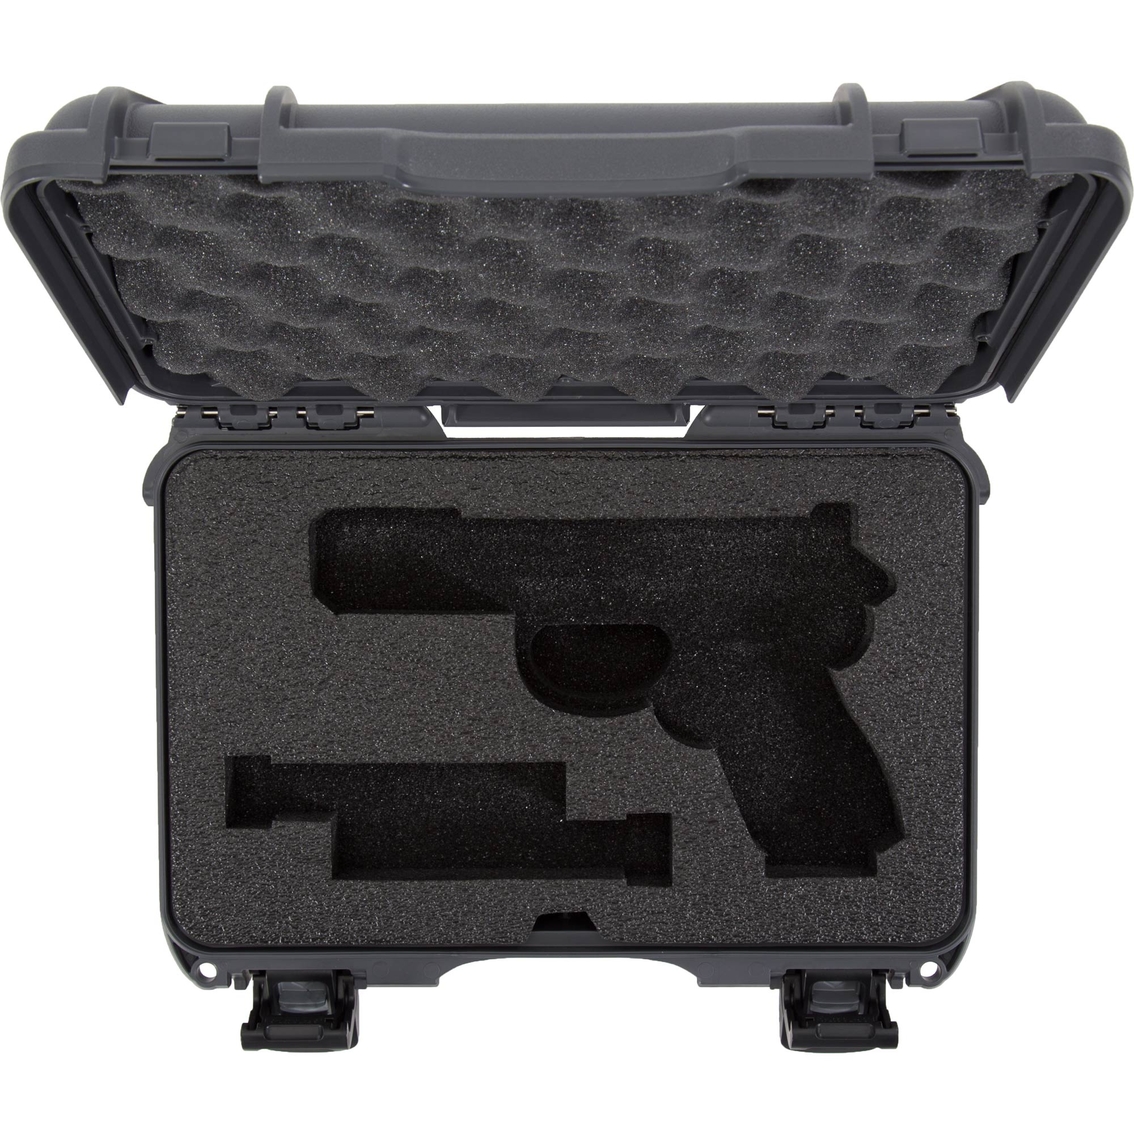 Nanuk Case 909 for Glock - Image 4 of 4